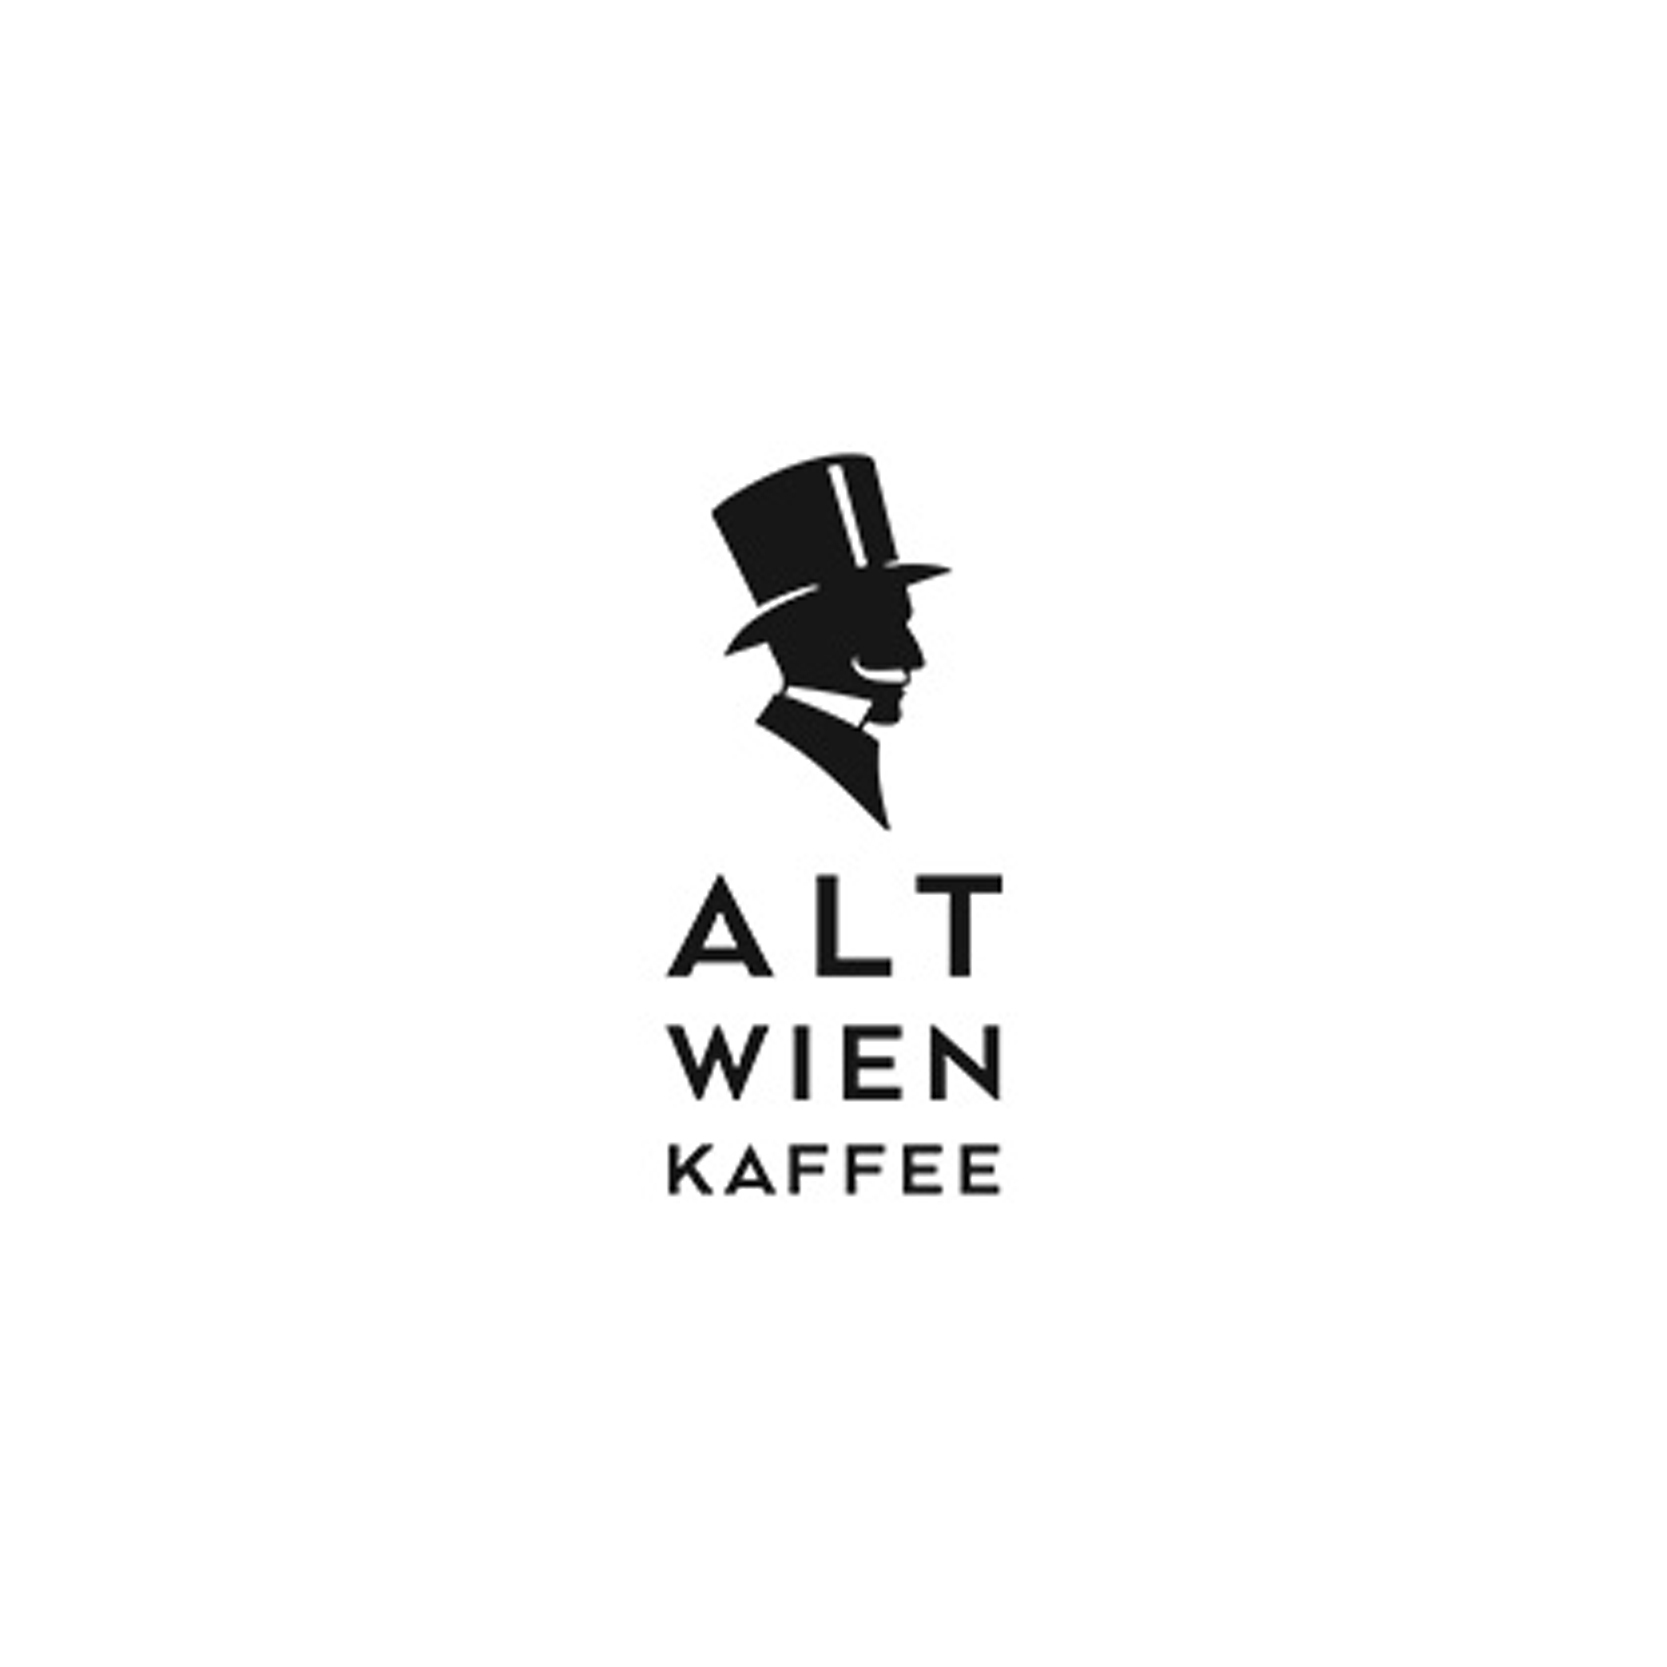 Sponsor_Kaffee alt wien_logo